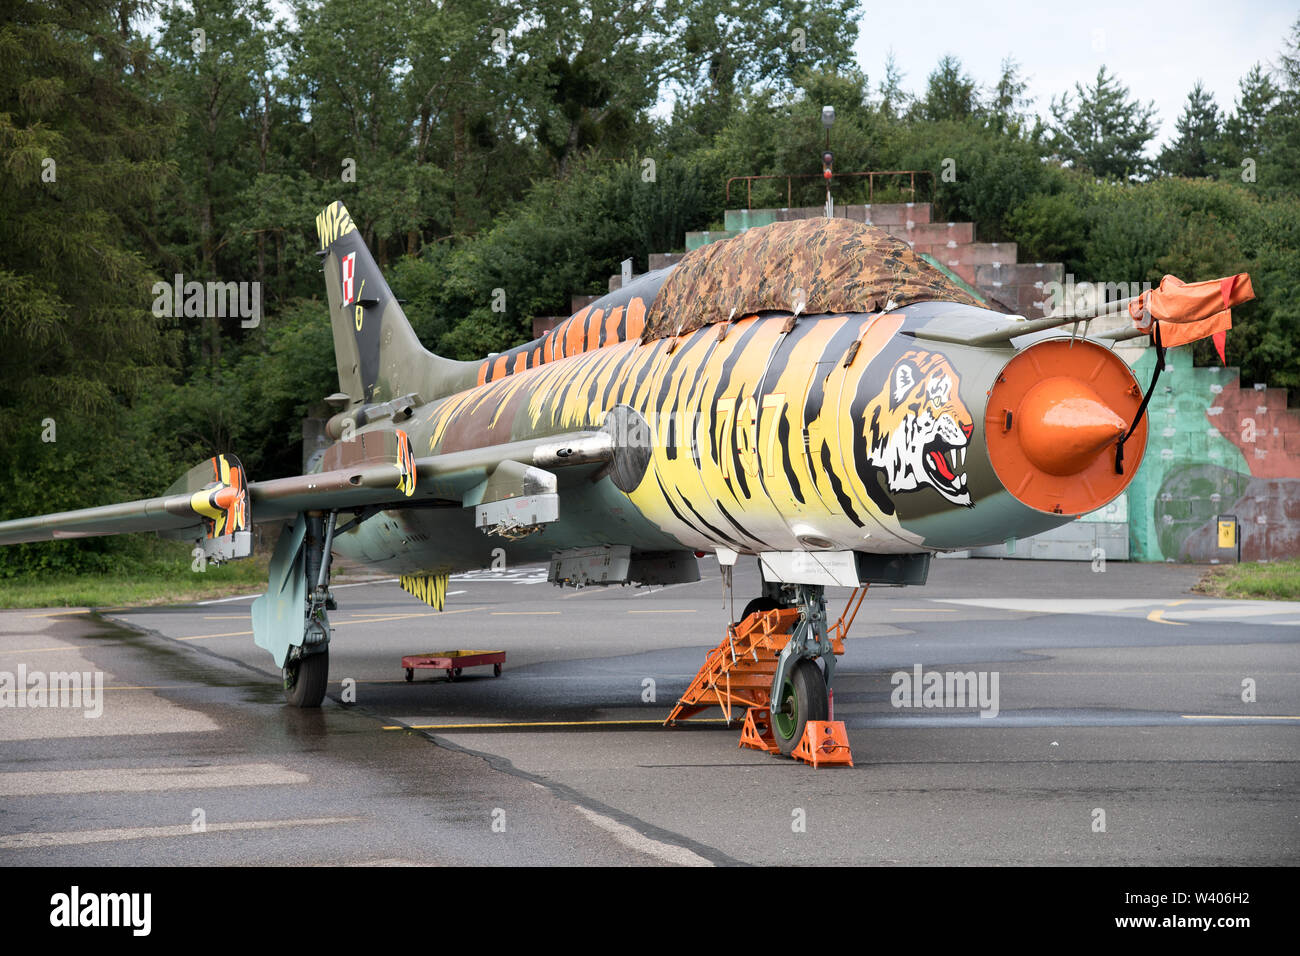 Sowjetische gemacht Jagdbomber Suchoi Su-22 in Gdynia, Polen. 13. Juli 2019 © wojciech Strozyk/Alamy Stock Foto Stockfoto